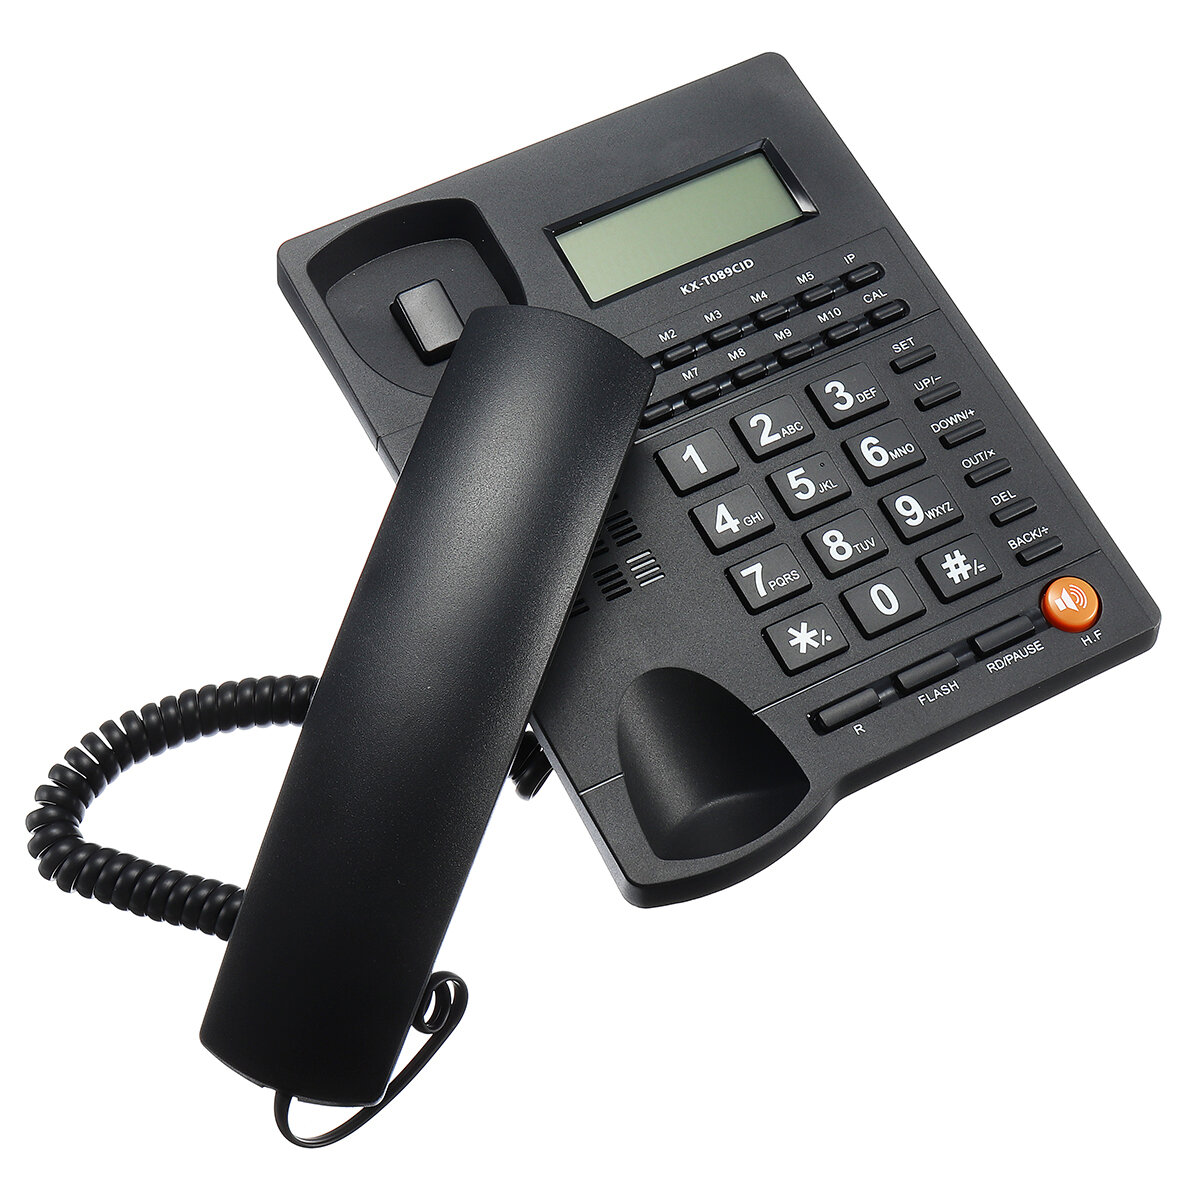 

Desktop Landline Phone Fixed Telephone FSK/DTMF Caller Corded Phone LCD Screen for Home Office Hotels